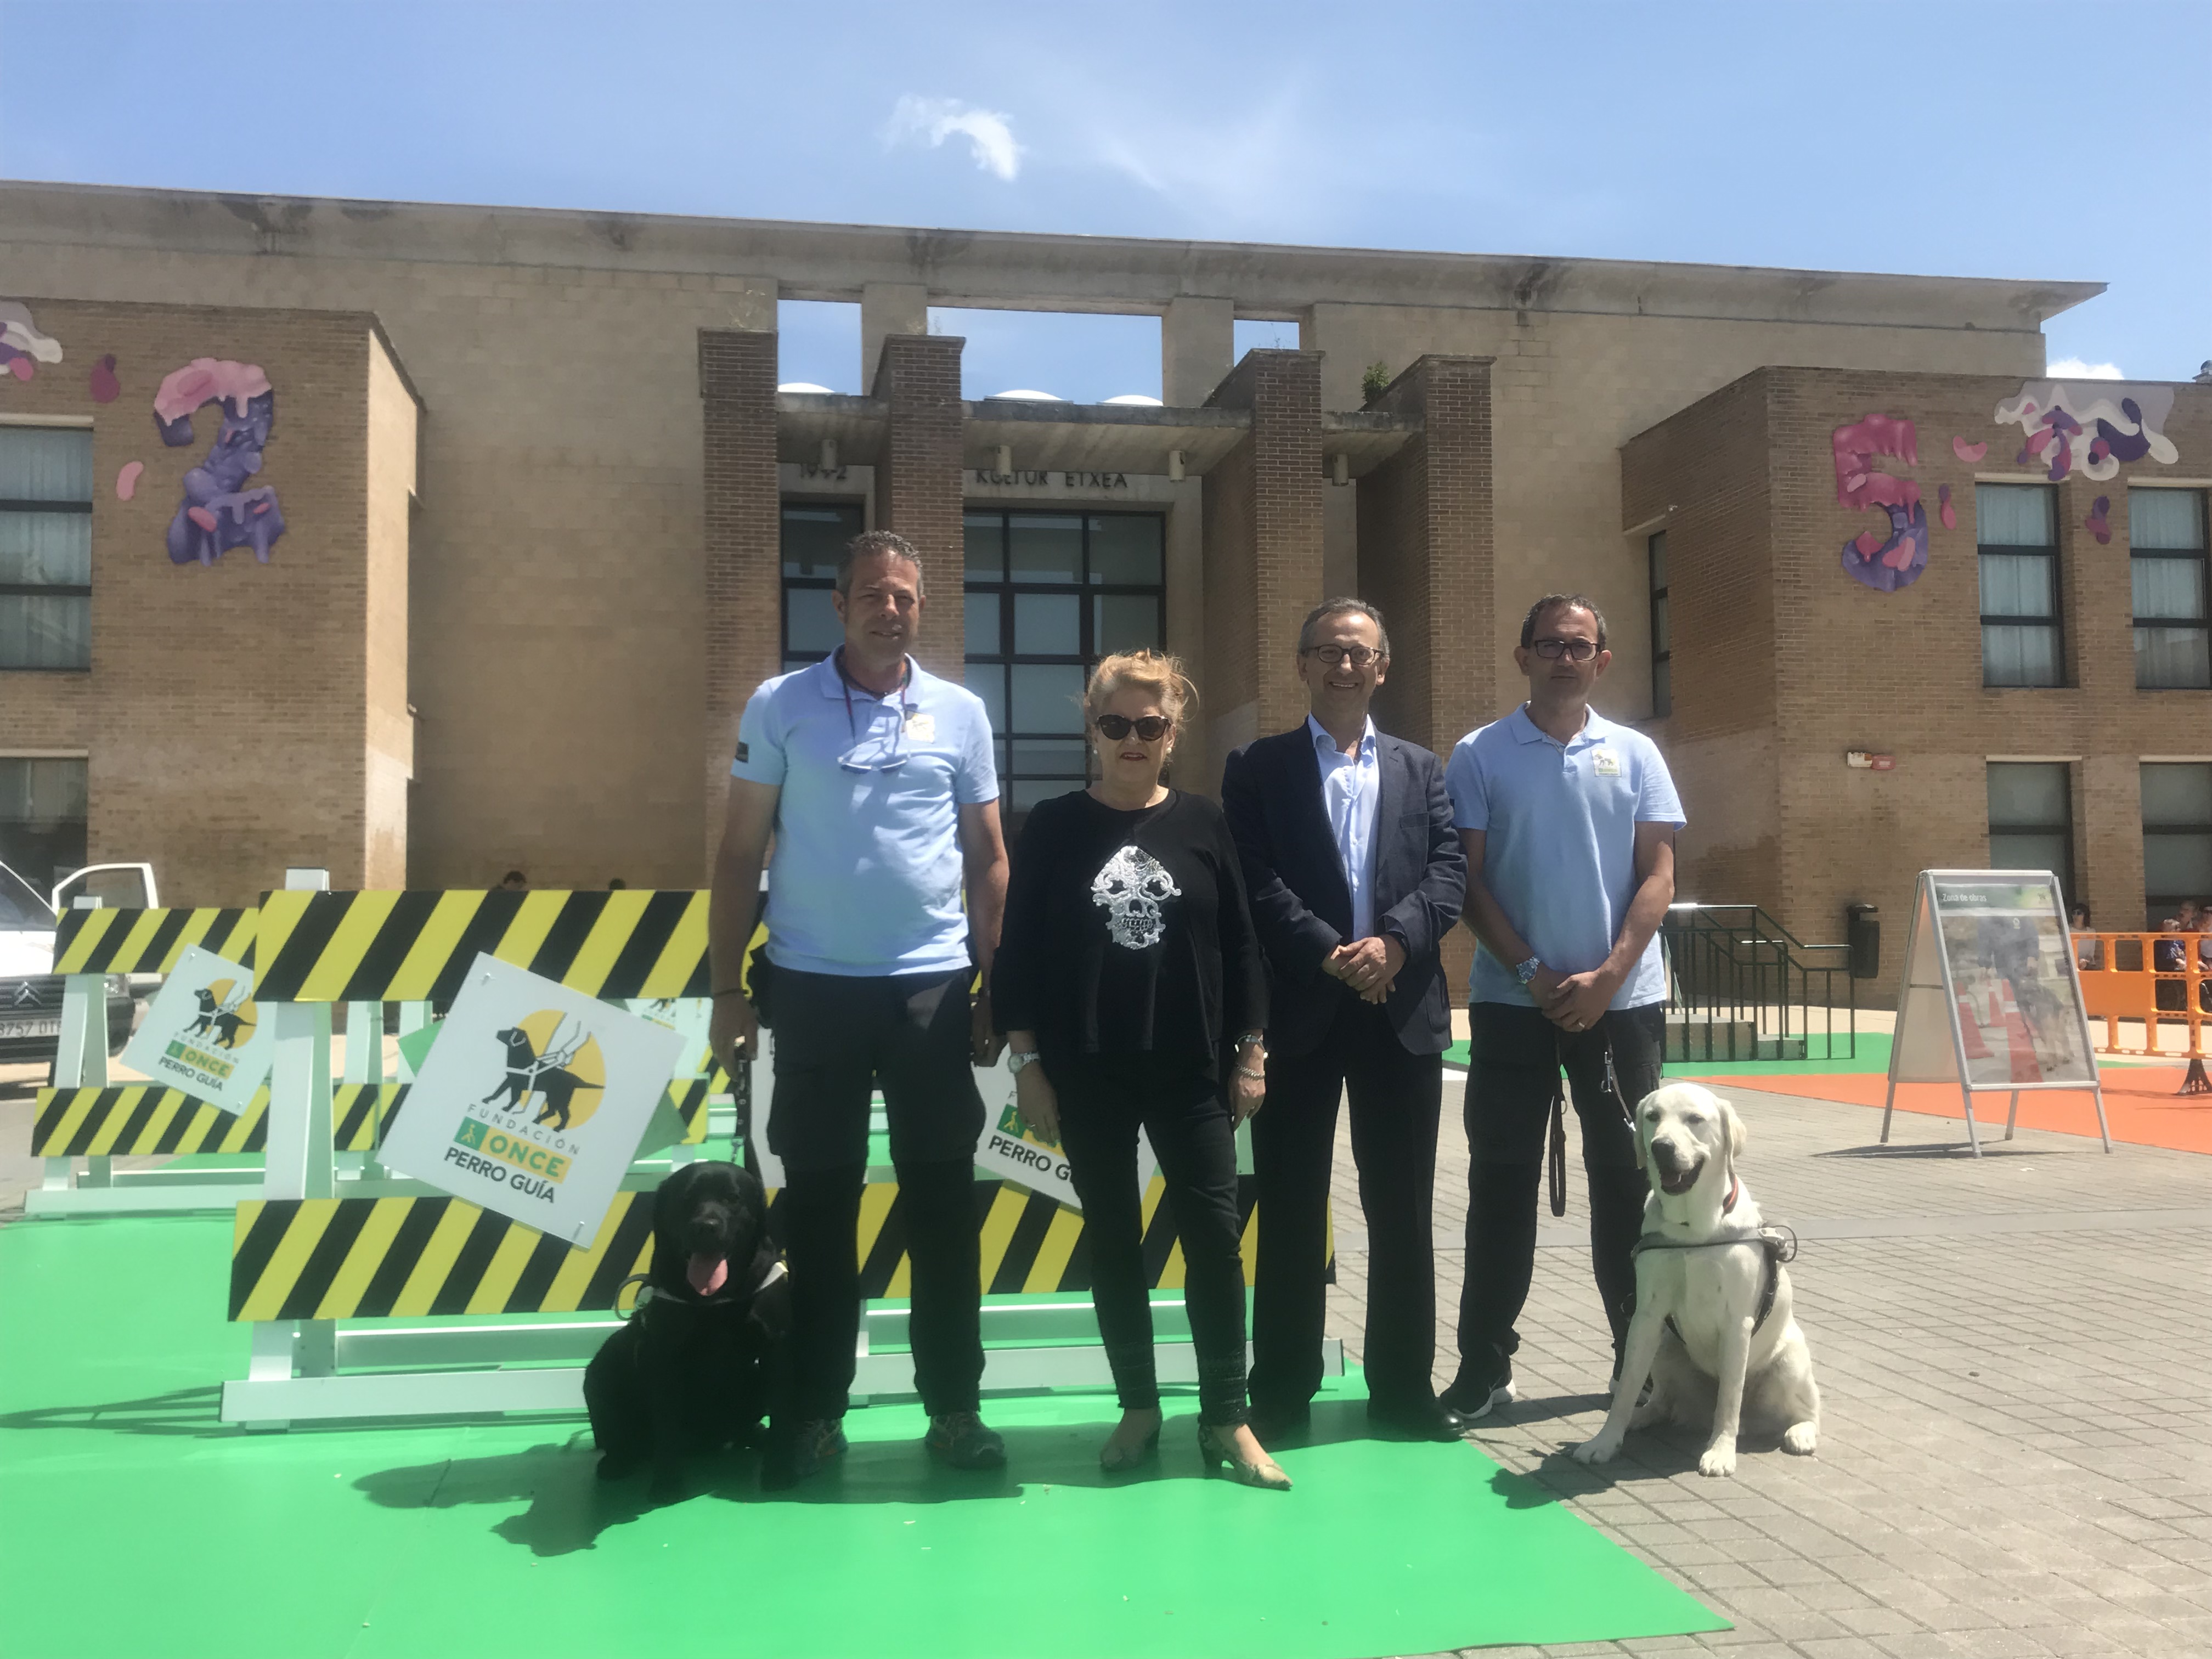 Fotografía de los instructores con sus perros guías además de miembros del Consejo Territorial de la ONCE de Navarra